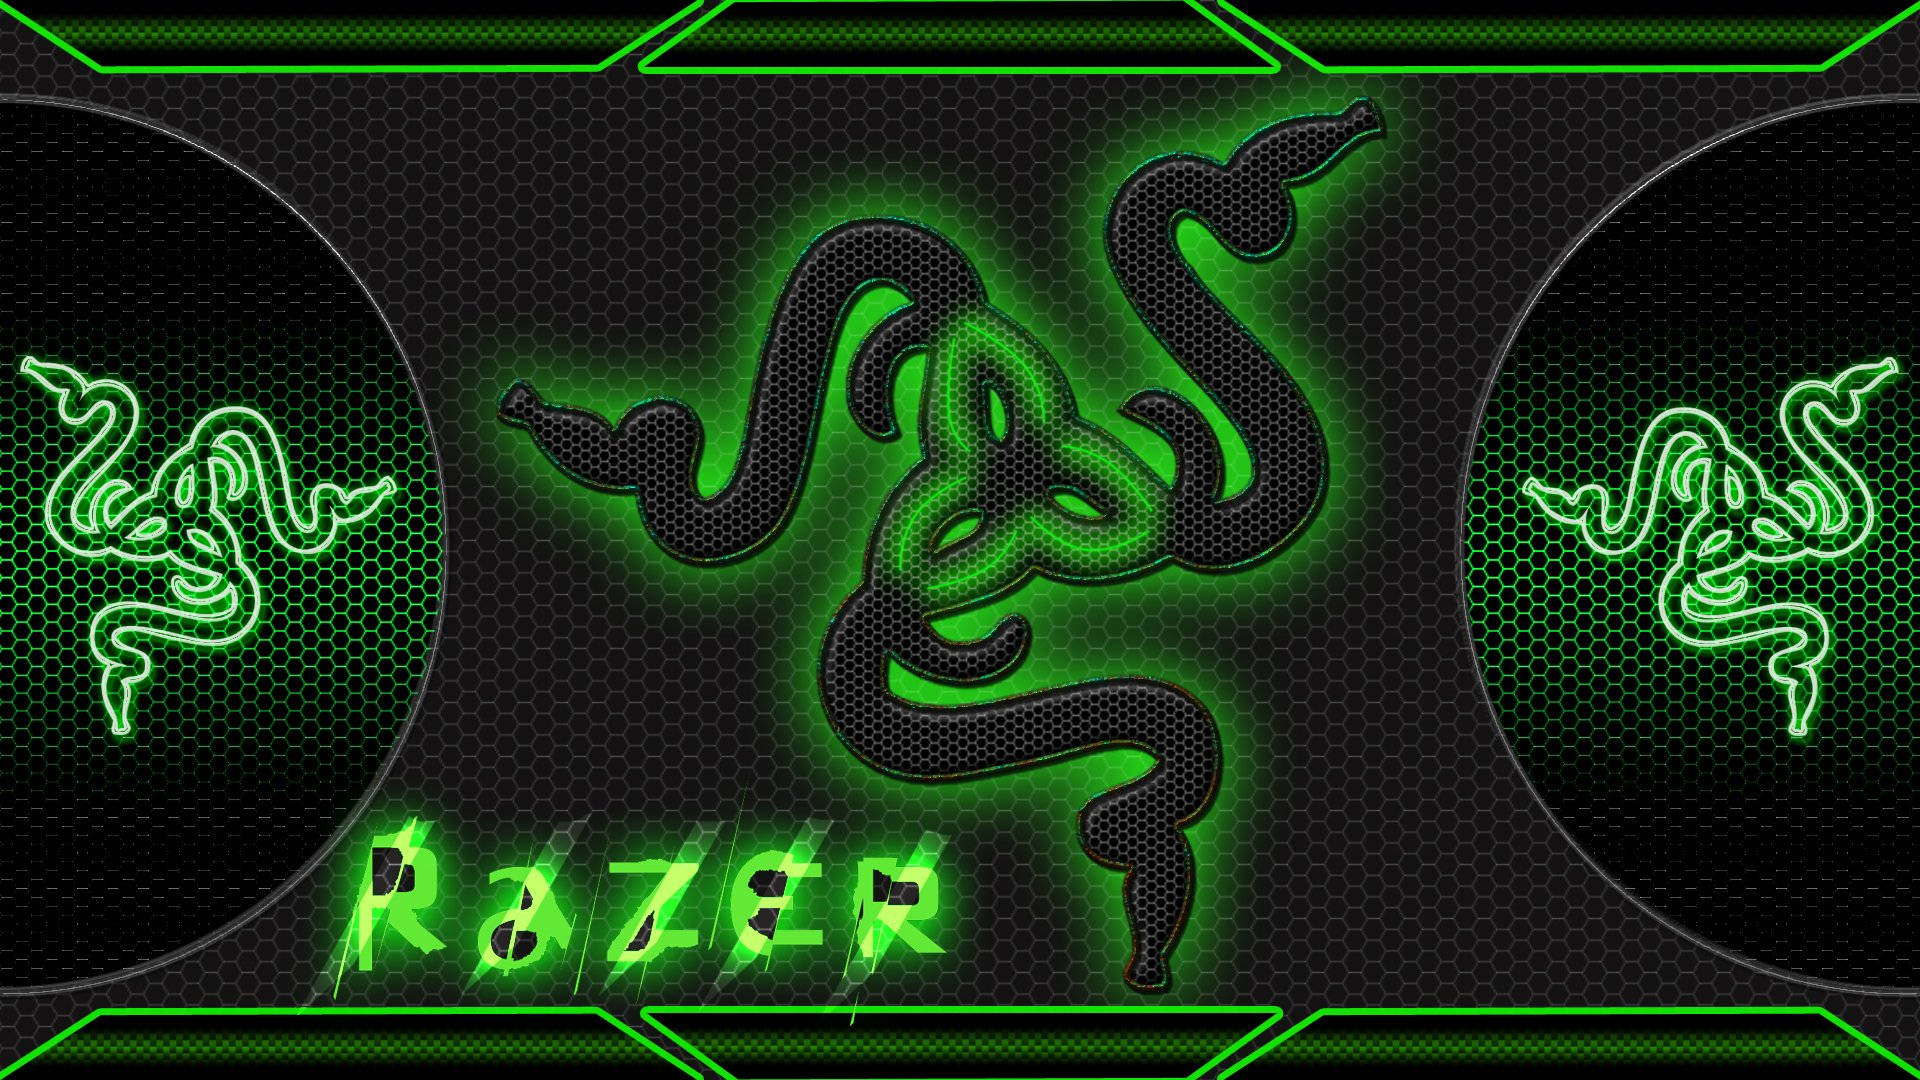 Tải ngay ảnh nền Razer PC logo màu xanh cực chất lượng để tạo không gian làm việc thú vị và đầy sự năng động cho chiếc máy tính của bạn. Với đường nét sắc sảo và màu xanh lôi cuốn, hình ảnh chắc chắn sẽ khiến bạn mê mẩn.